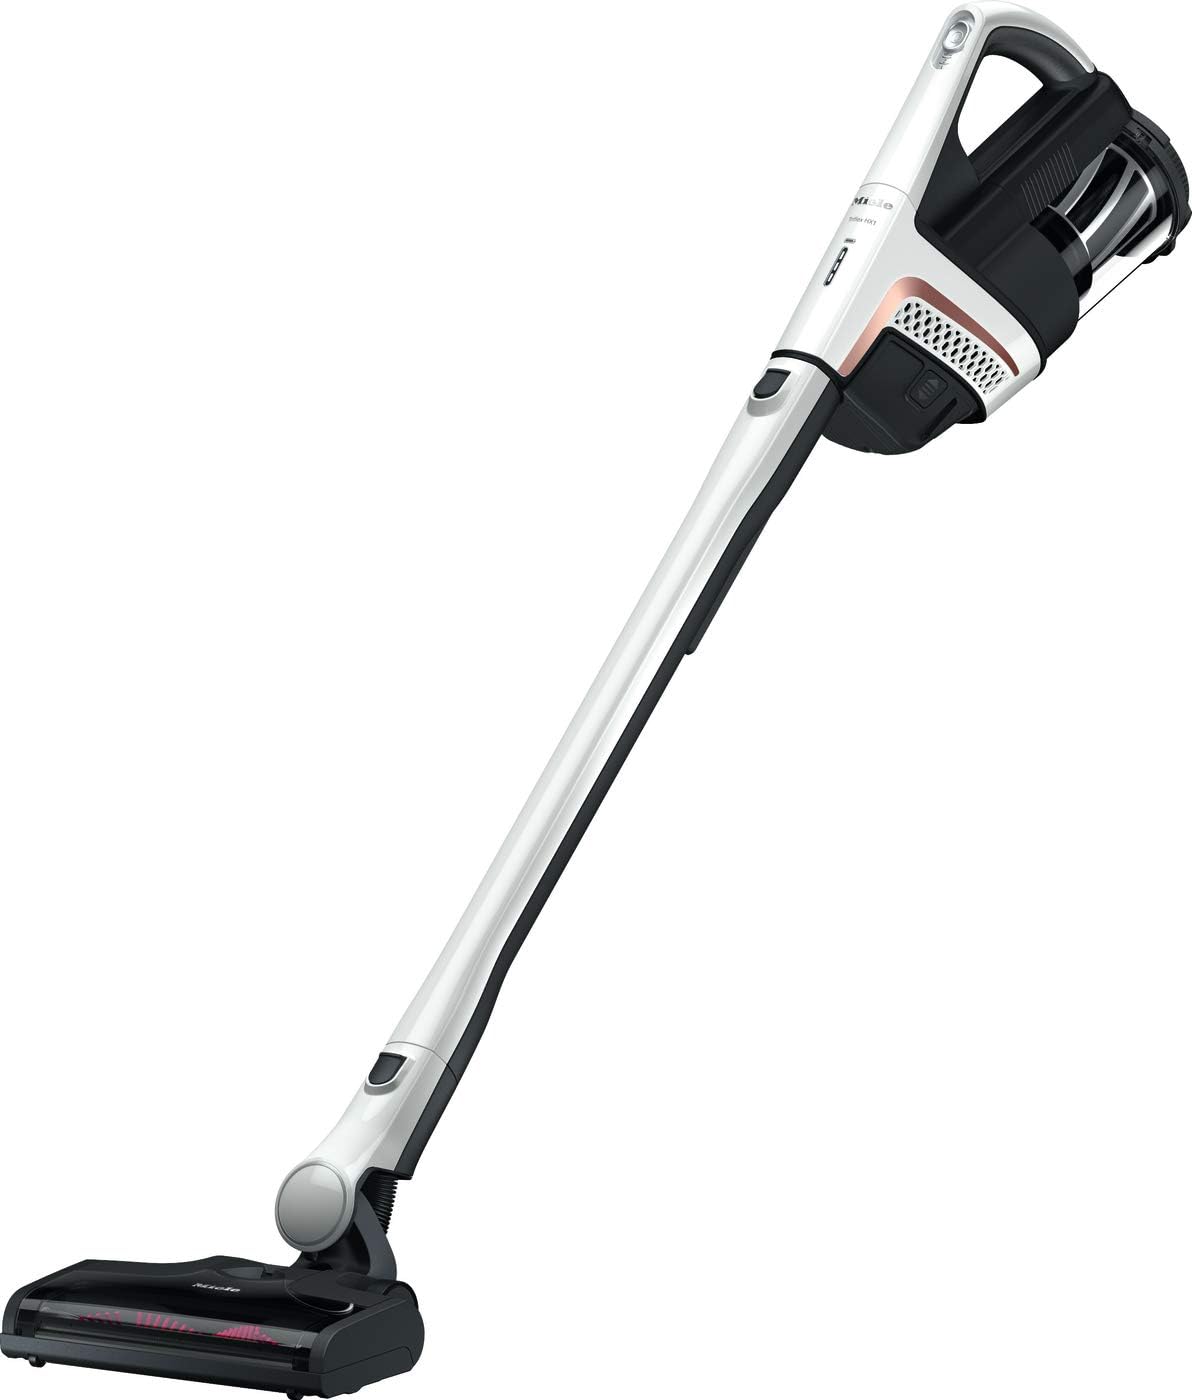 Miele Triflex HX1 3-in-1 Stick Vacuum